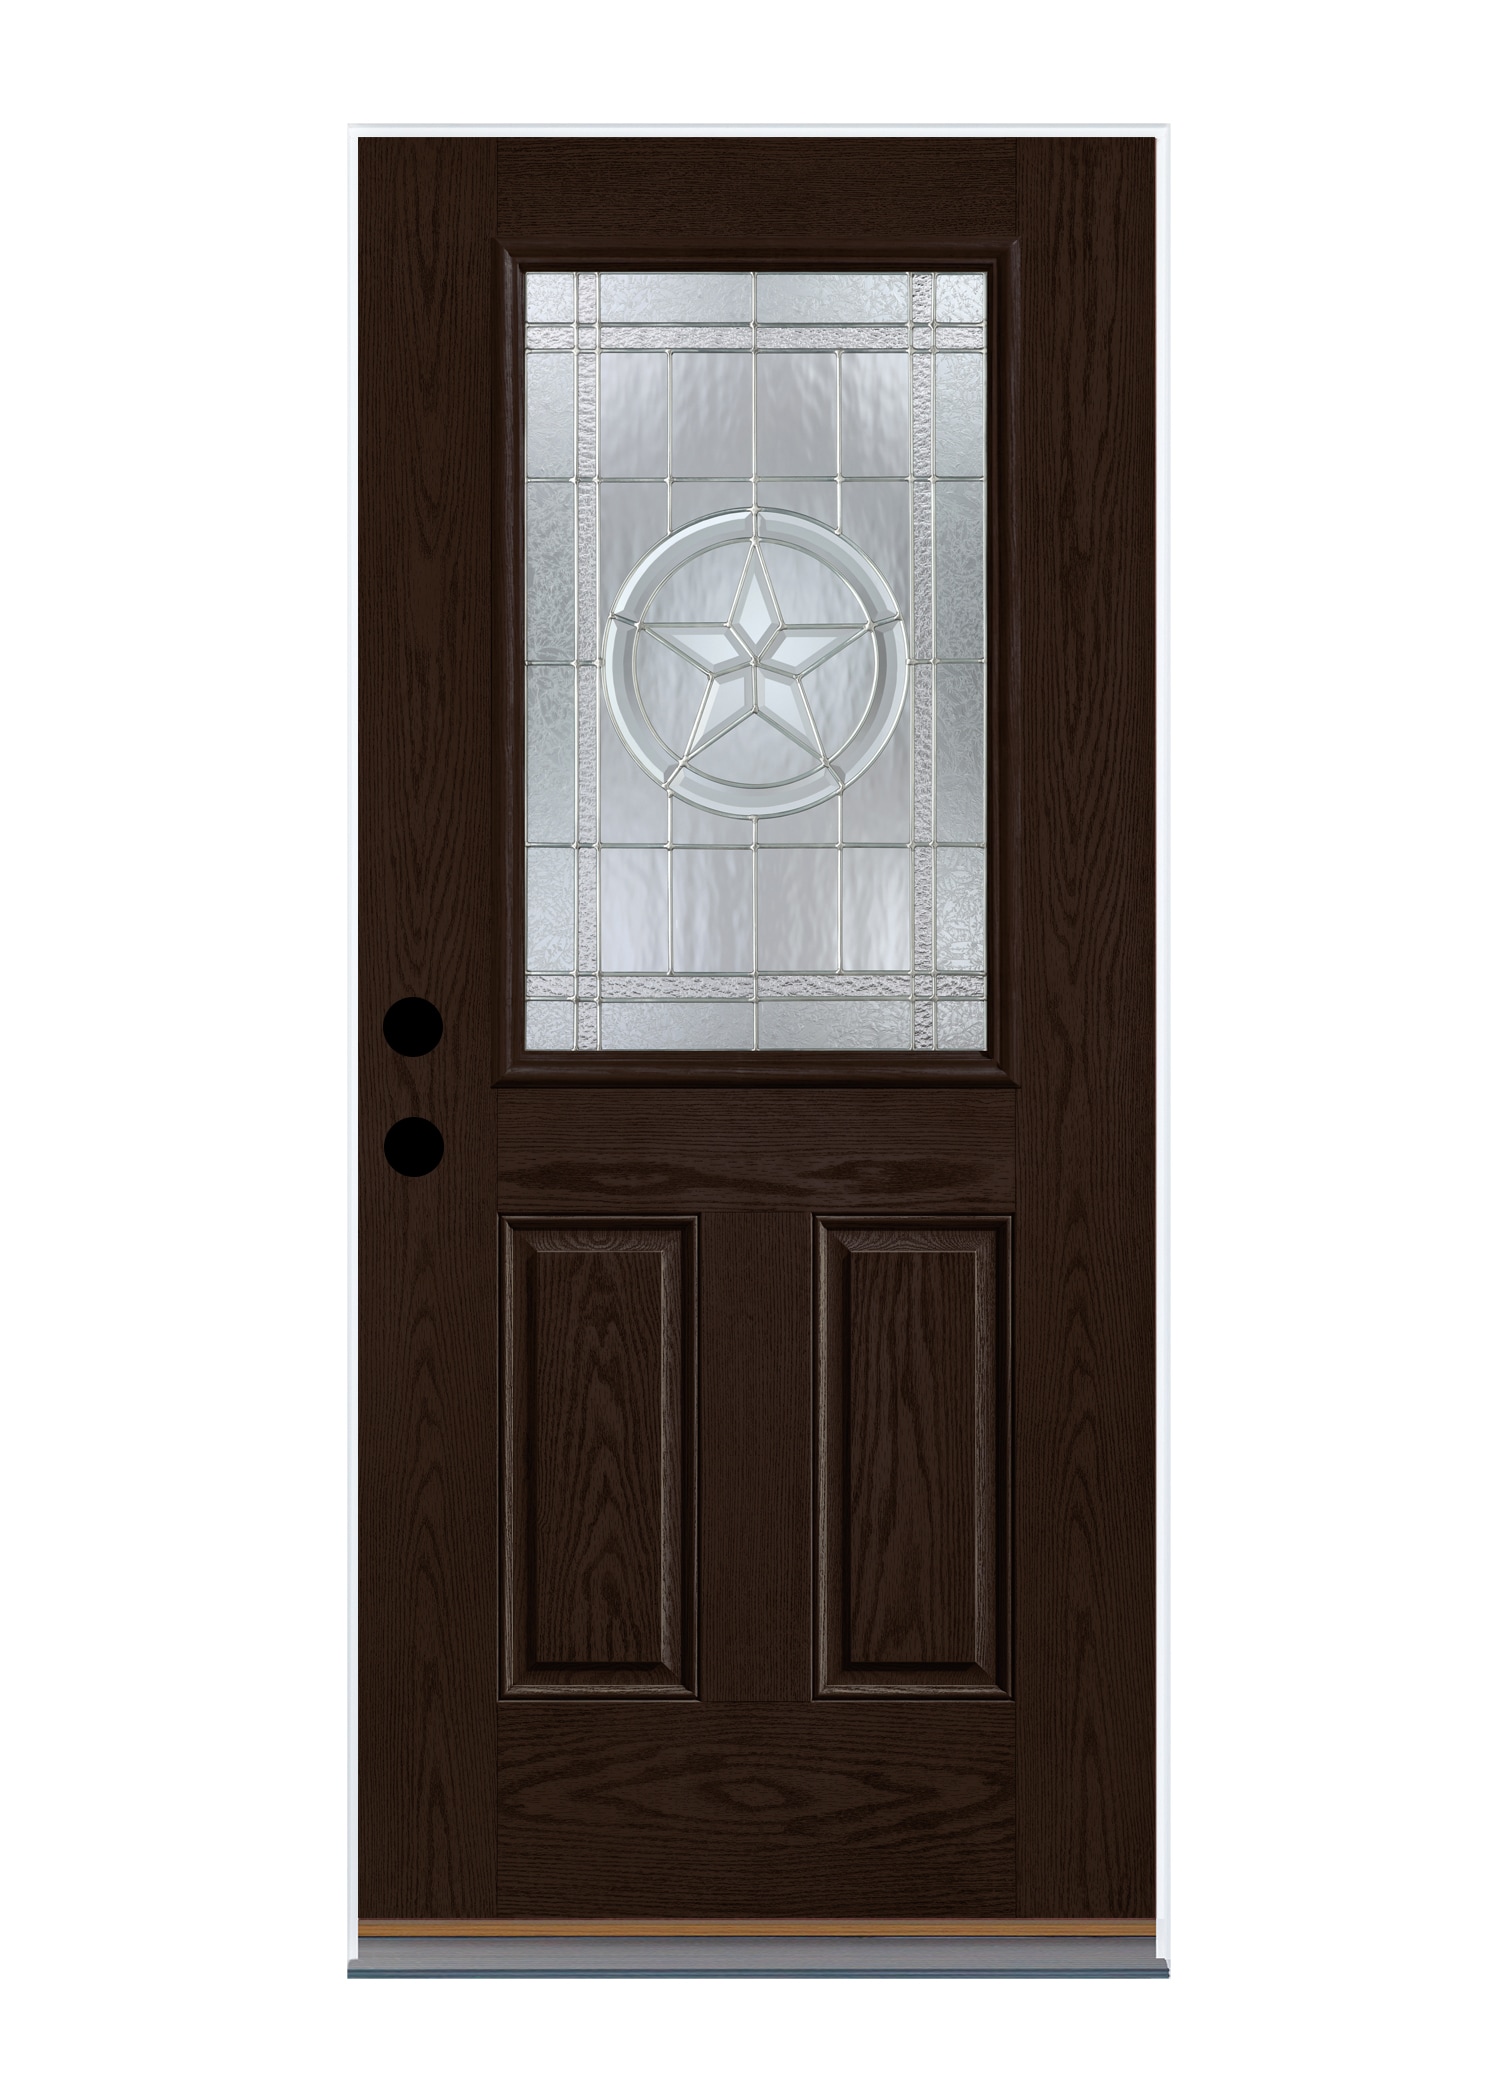 36 Texas Star 1640 Fiberglass Door - Dark Walnut - Left Hand Inswing